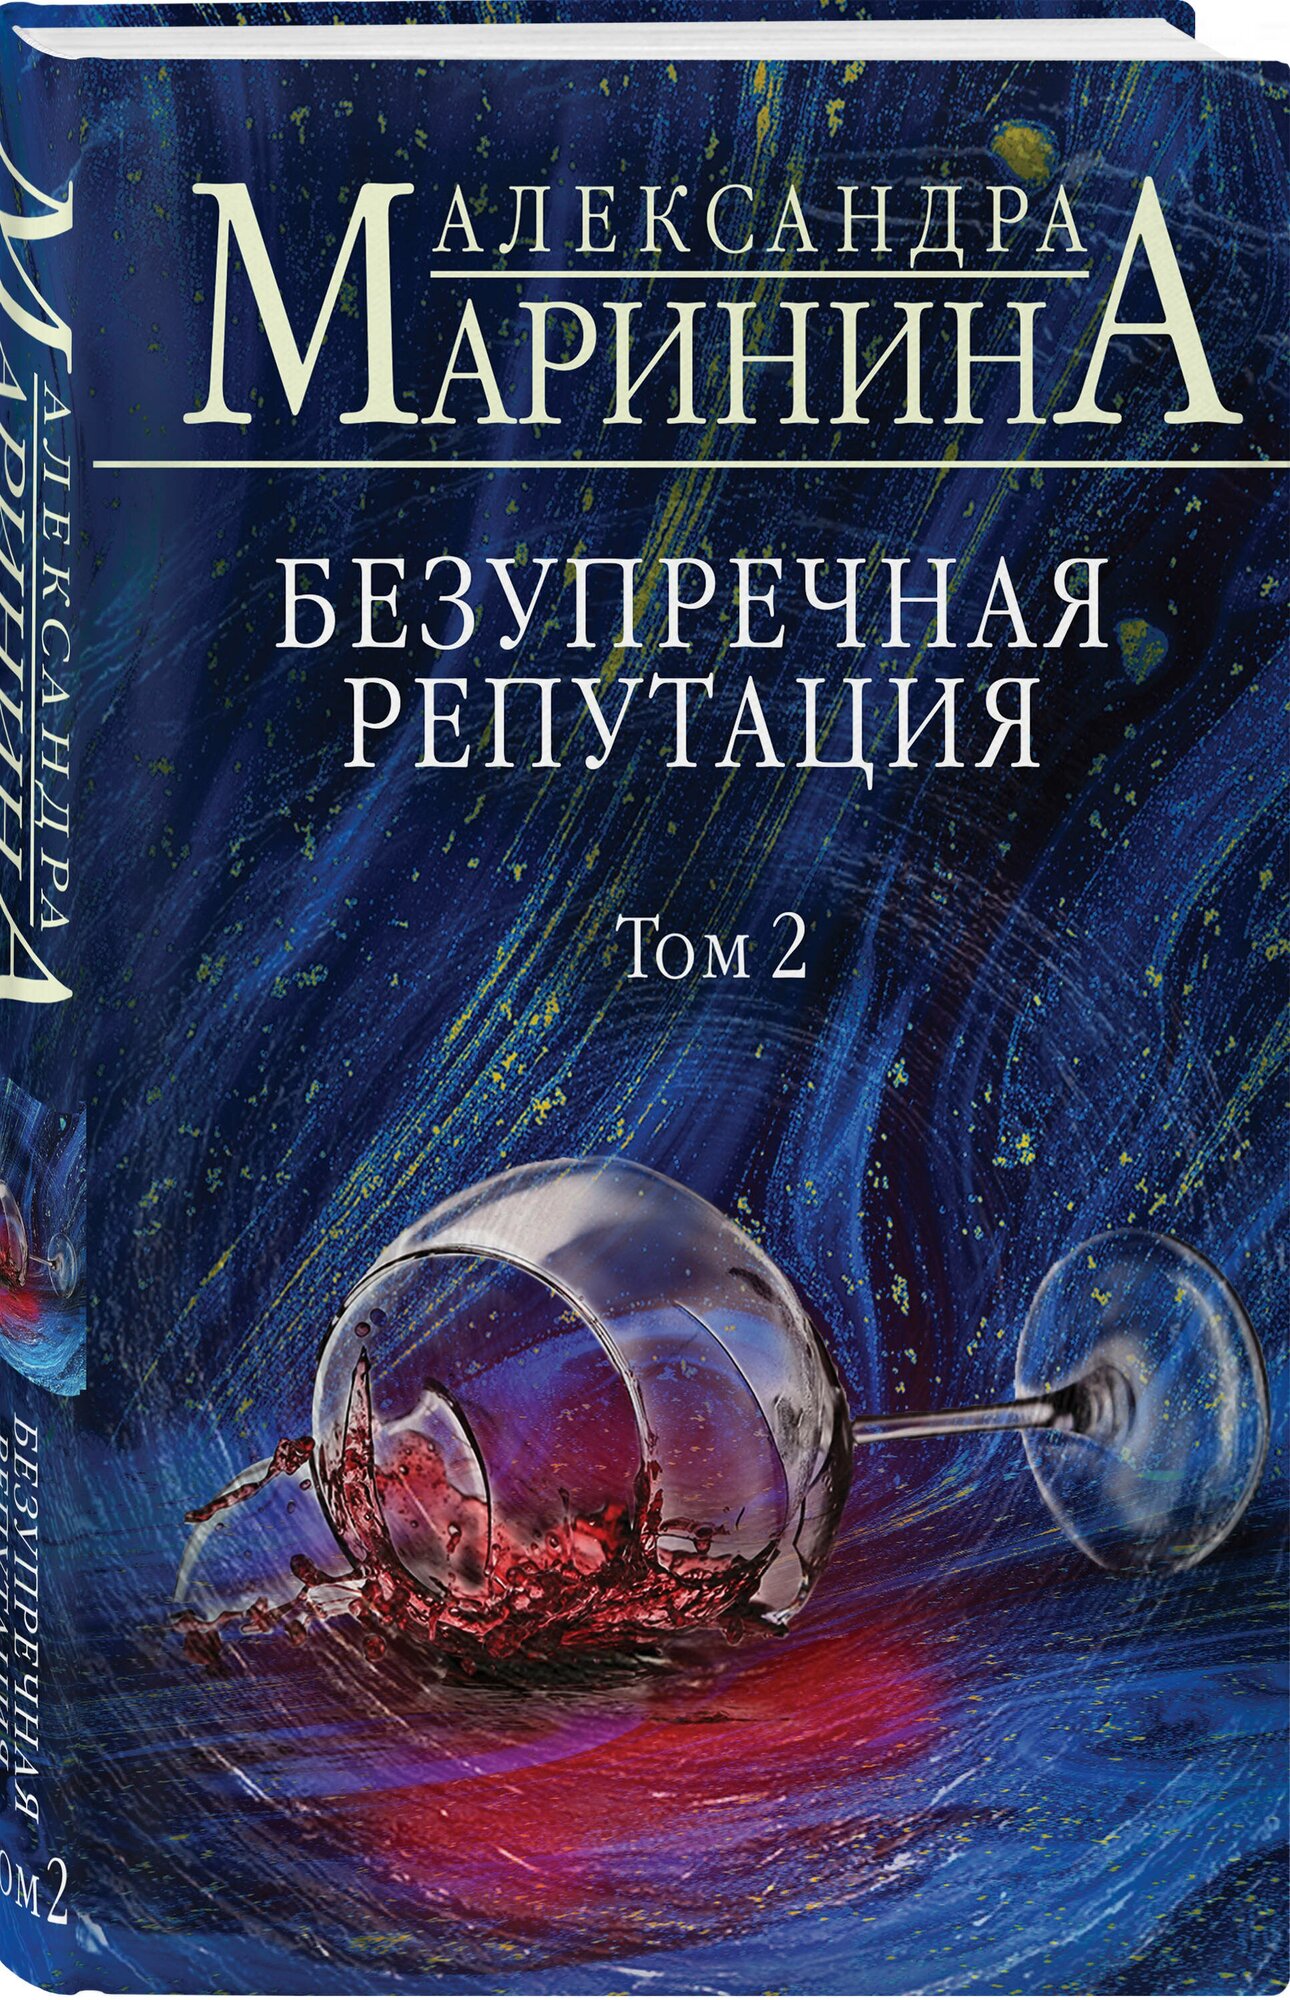 Безупречная репутация Том 2 Книга Маринина Александра 16+